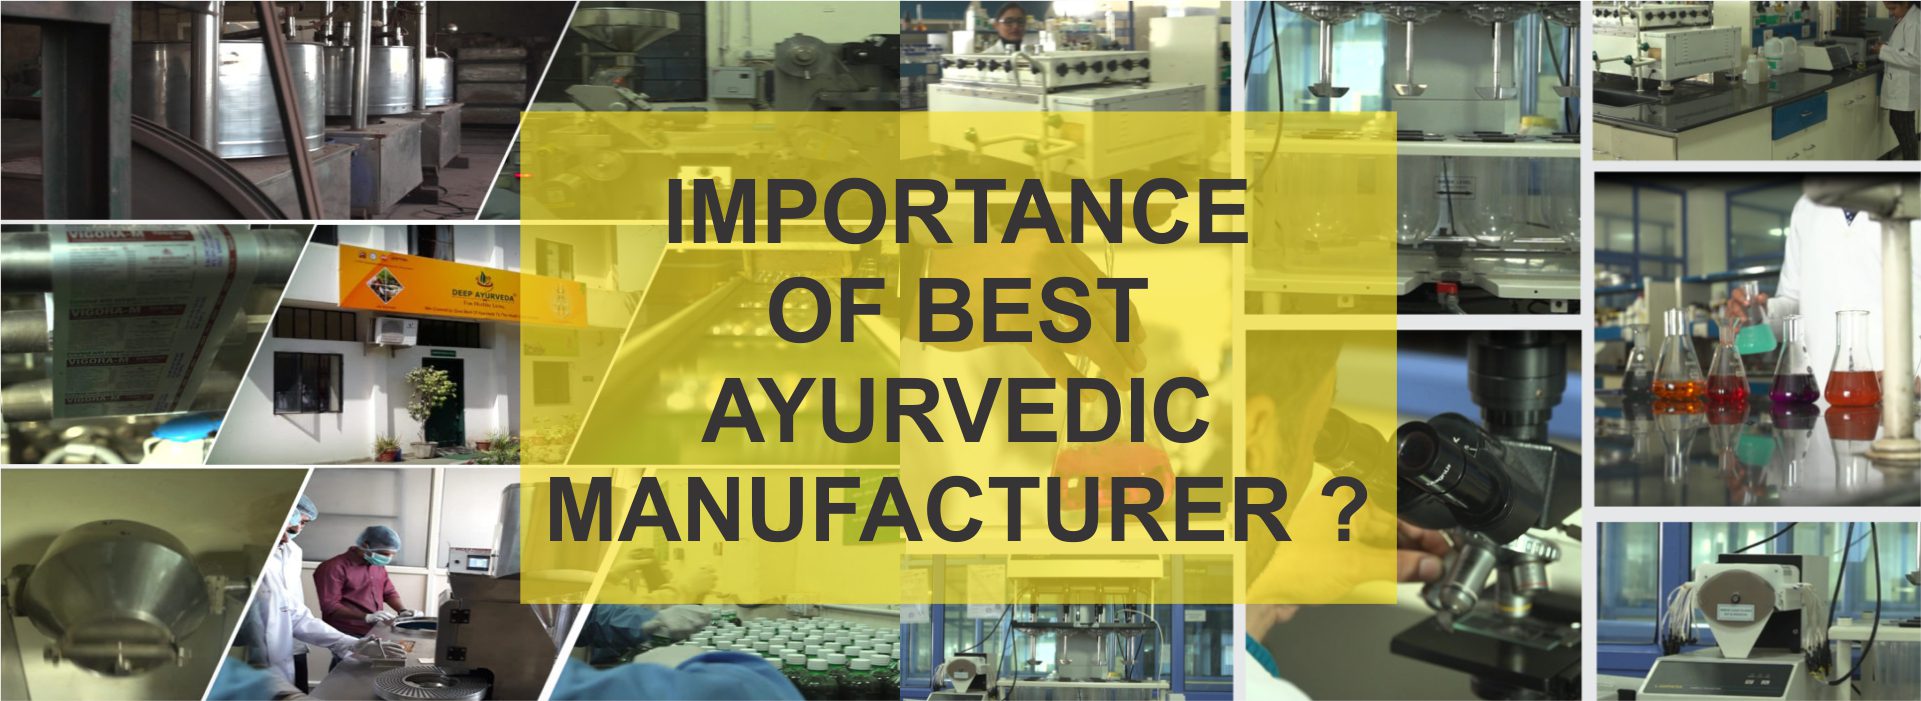 best ayurvedic medicine thirdparty manufacturer 